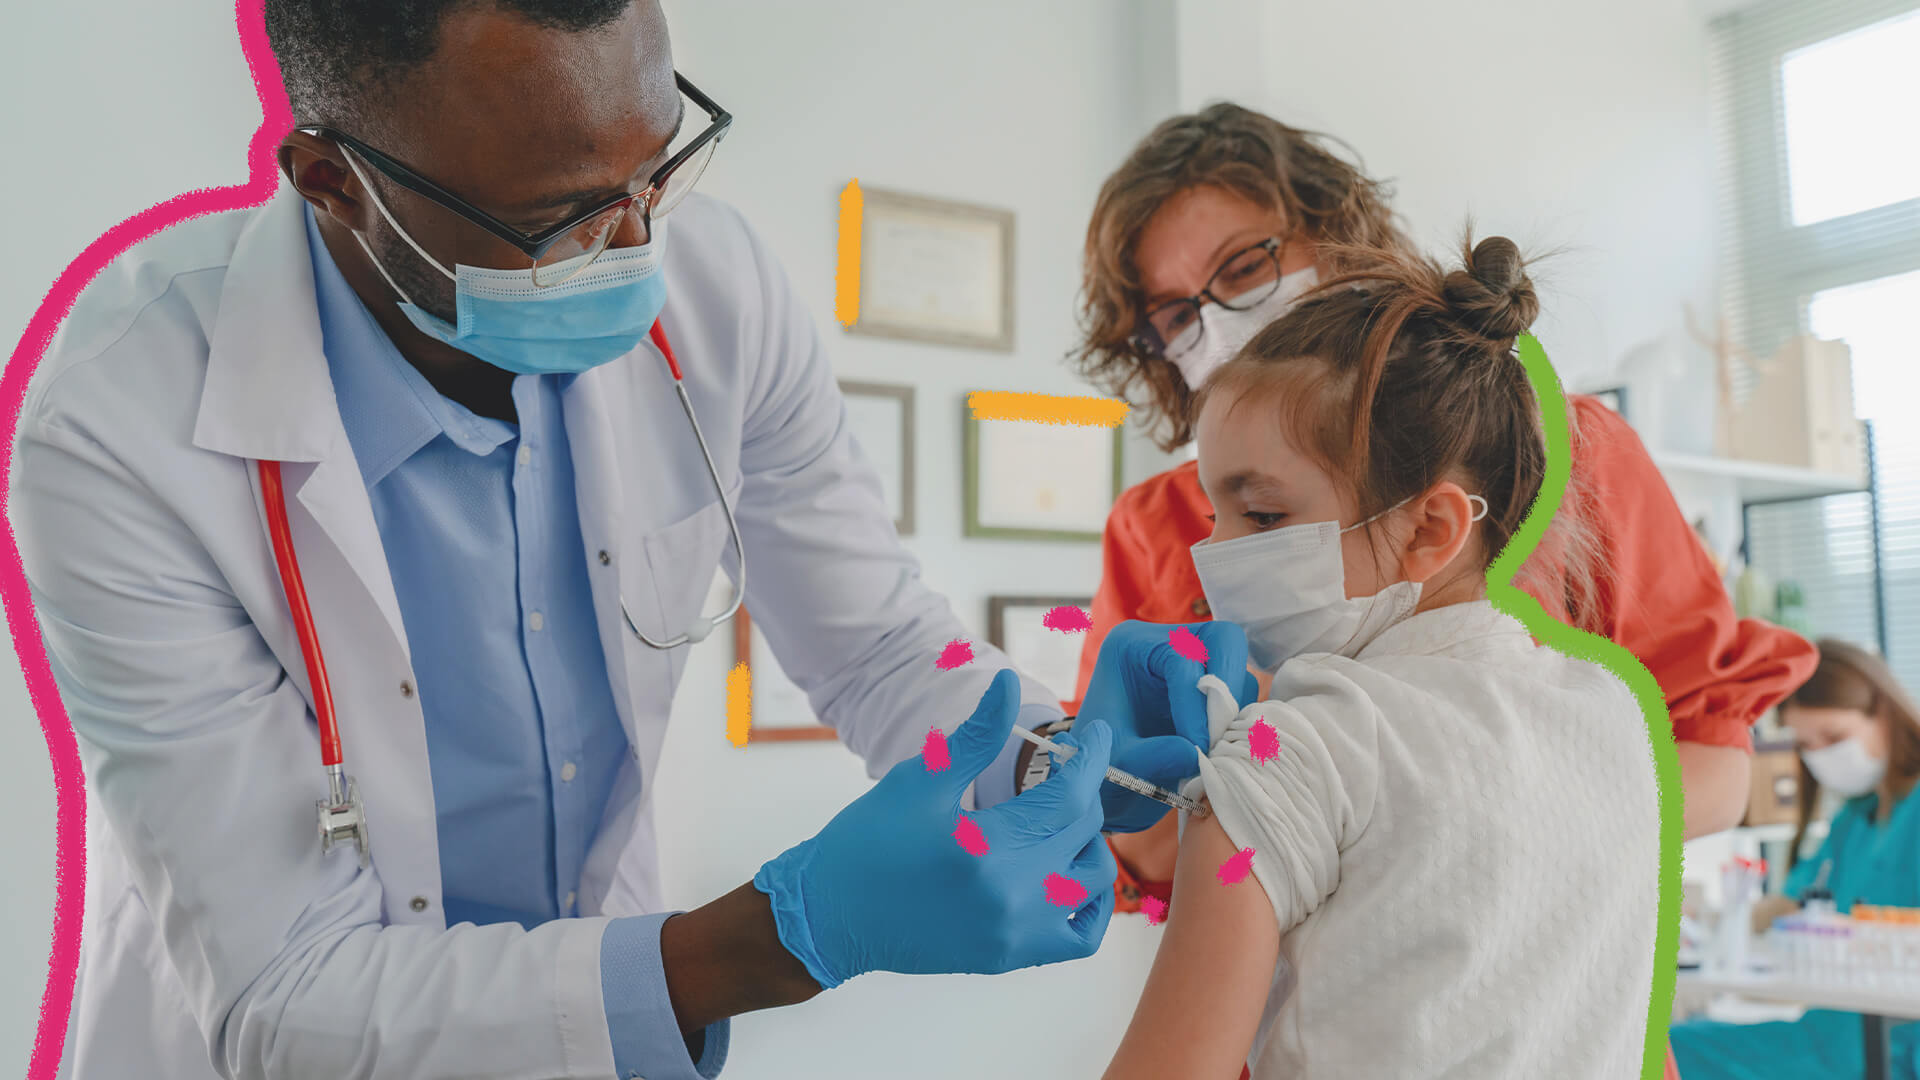 Vacinação, covid e crianças: na imagem, uma menina branca recebe uma vacina no braço de um enfermeiro negro. Ela está acompanhada por sua mãe, uma mulher também branca.